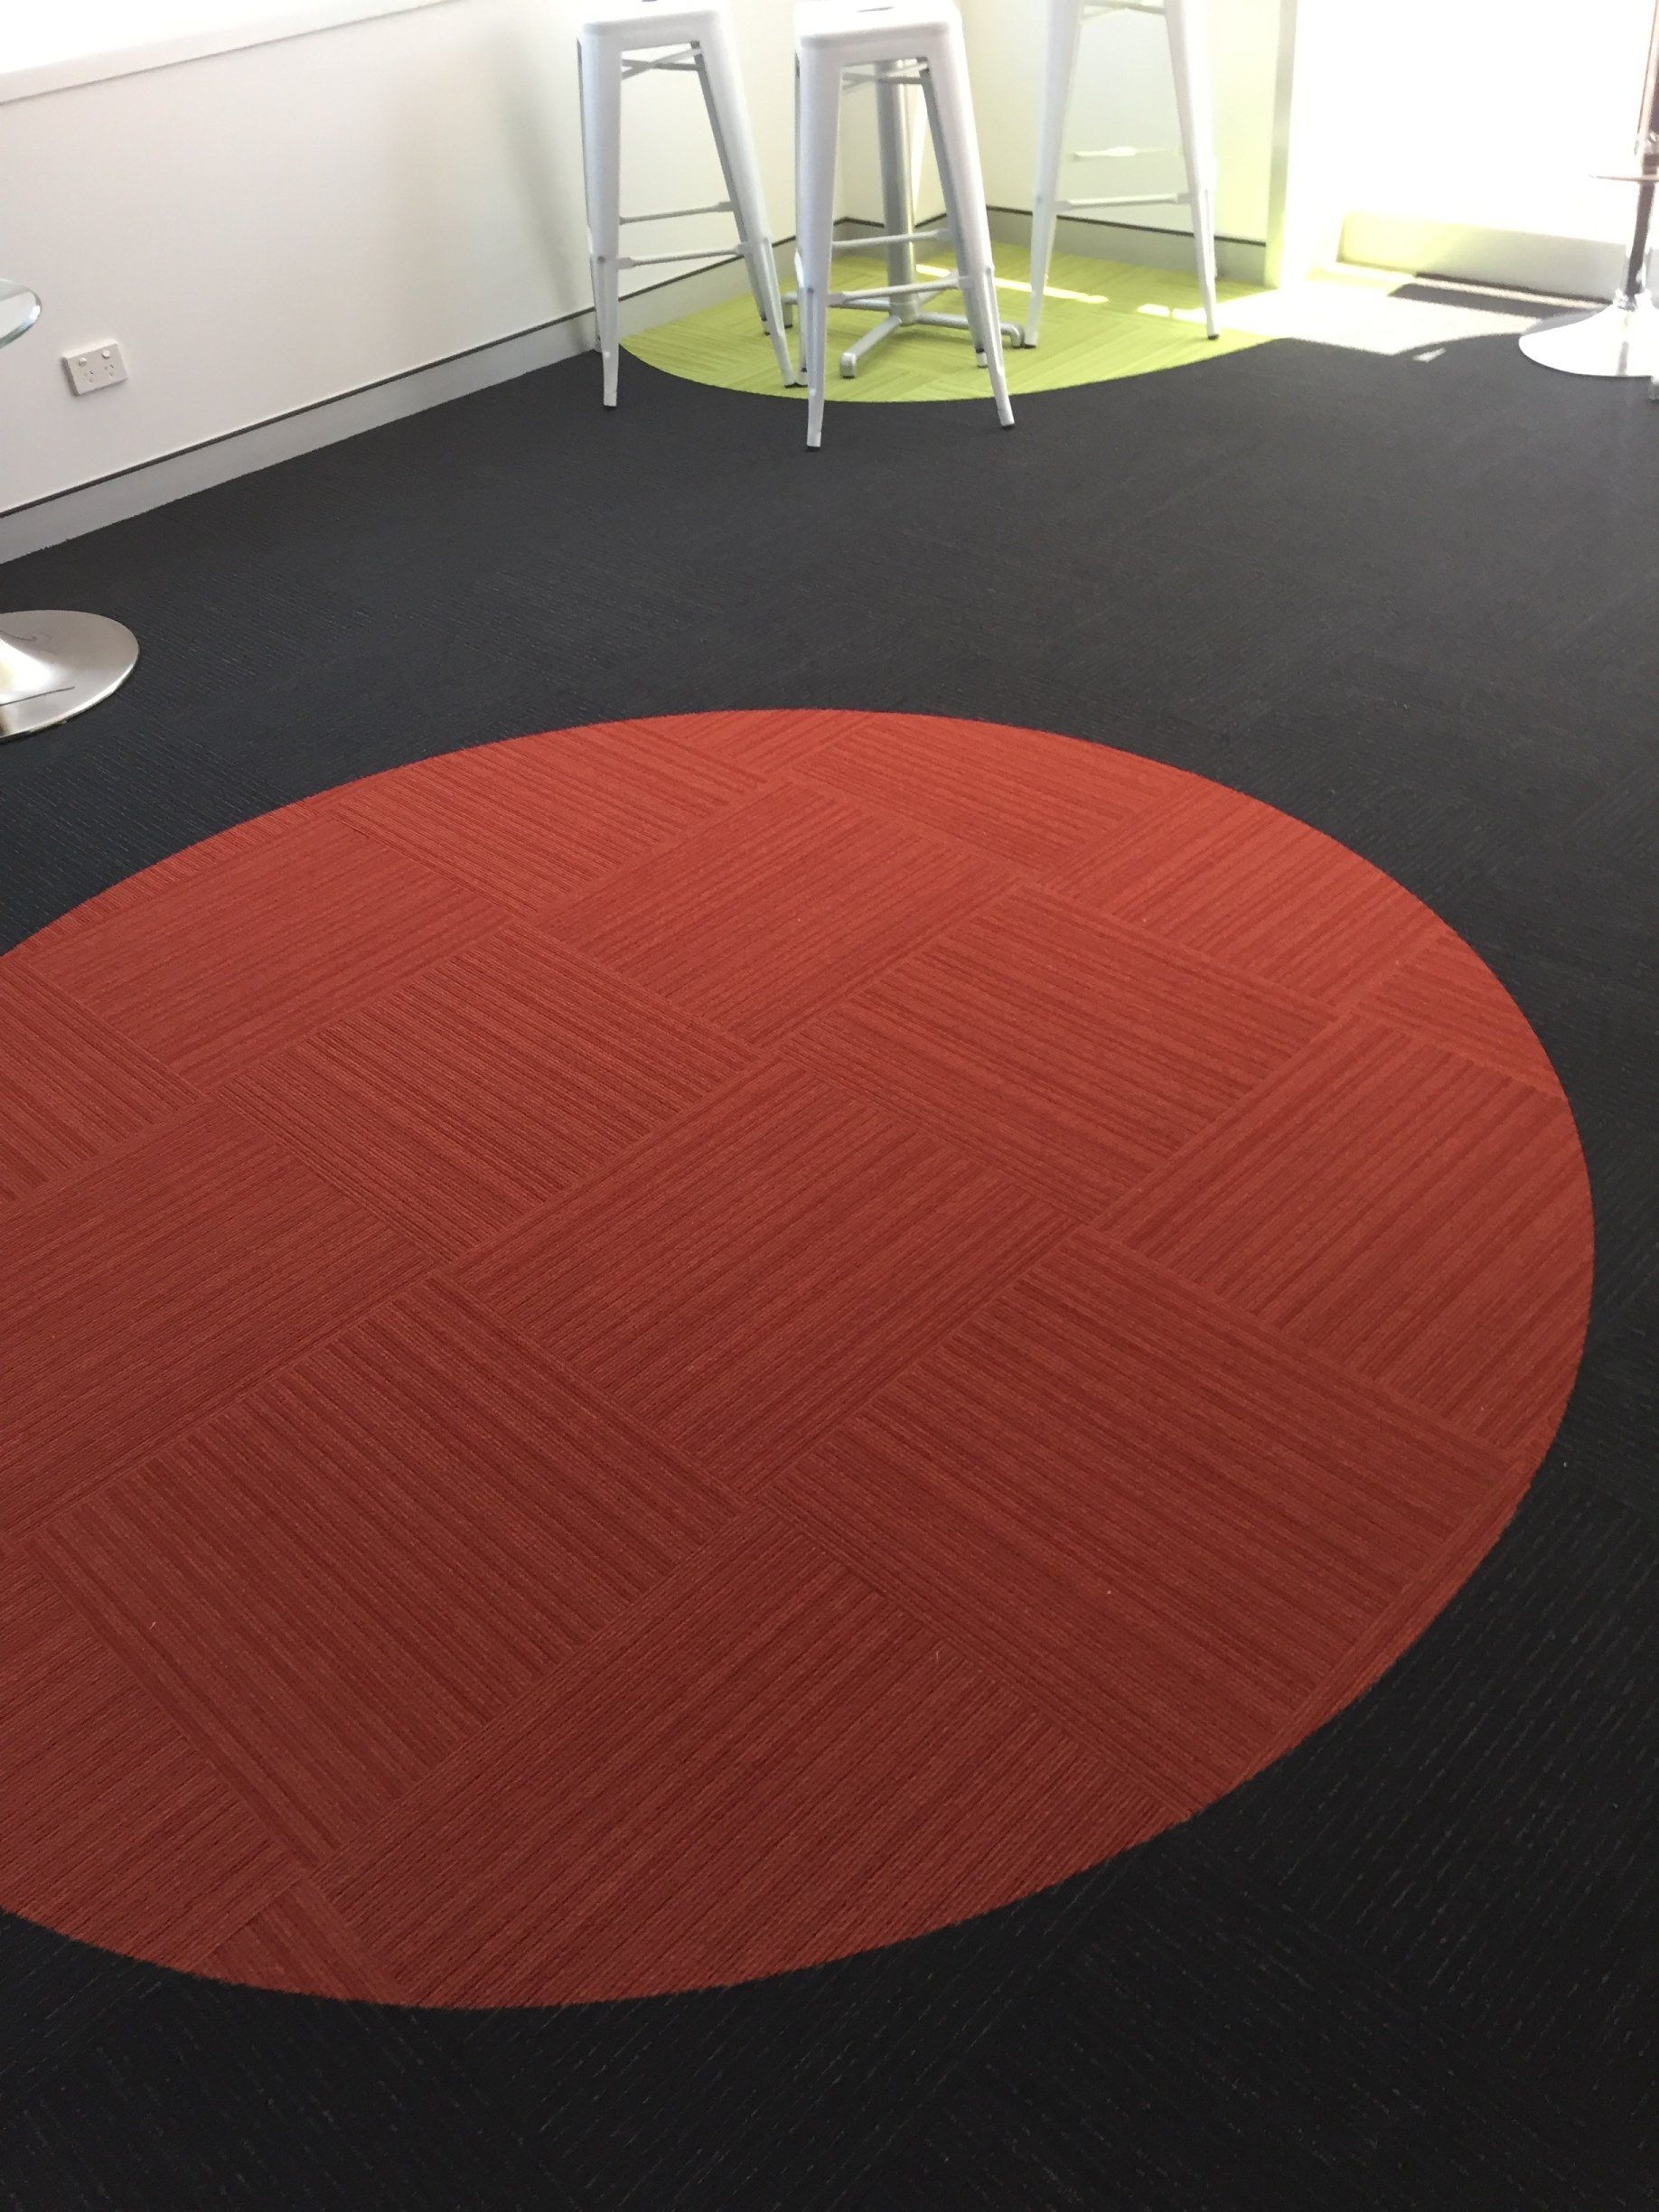 round red carpet black flooring